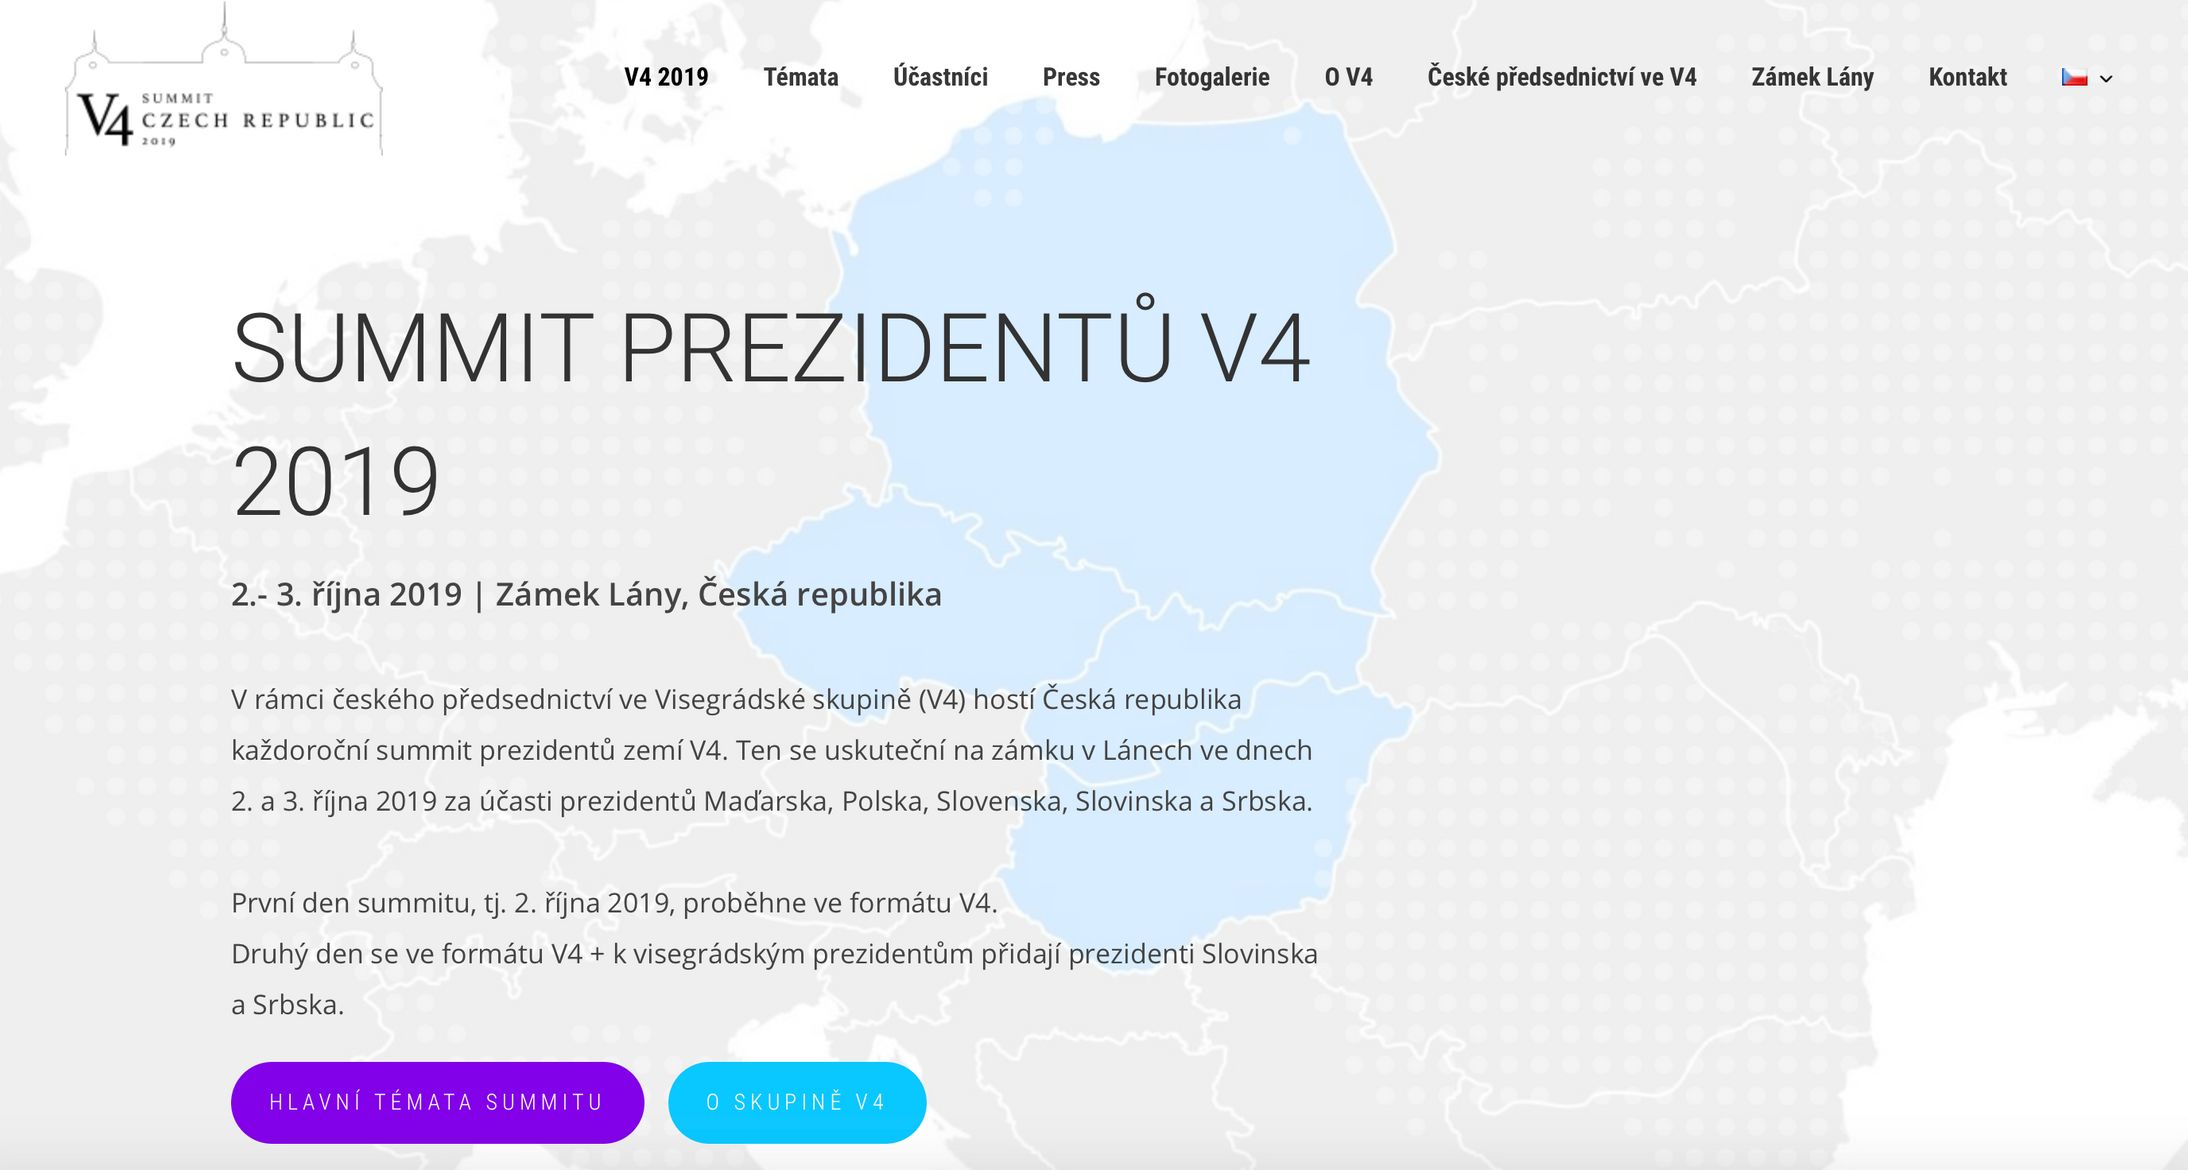 Web v4summit2019.cz, za který Hrad zaplatil více než 200 tisíc